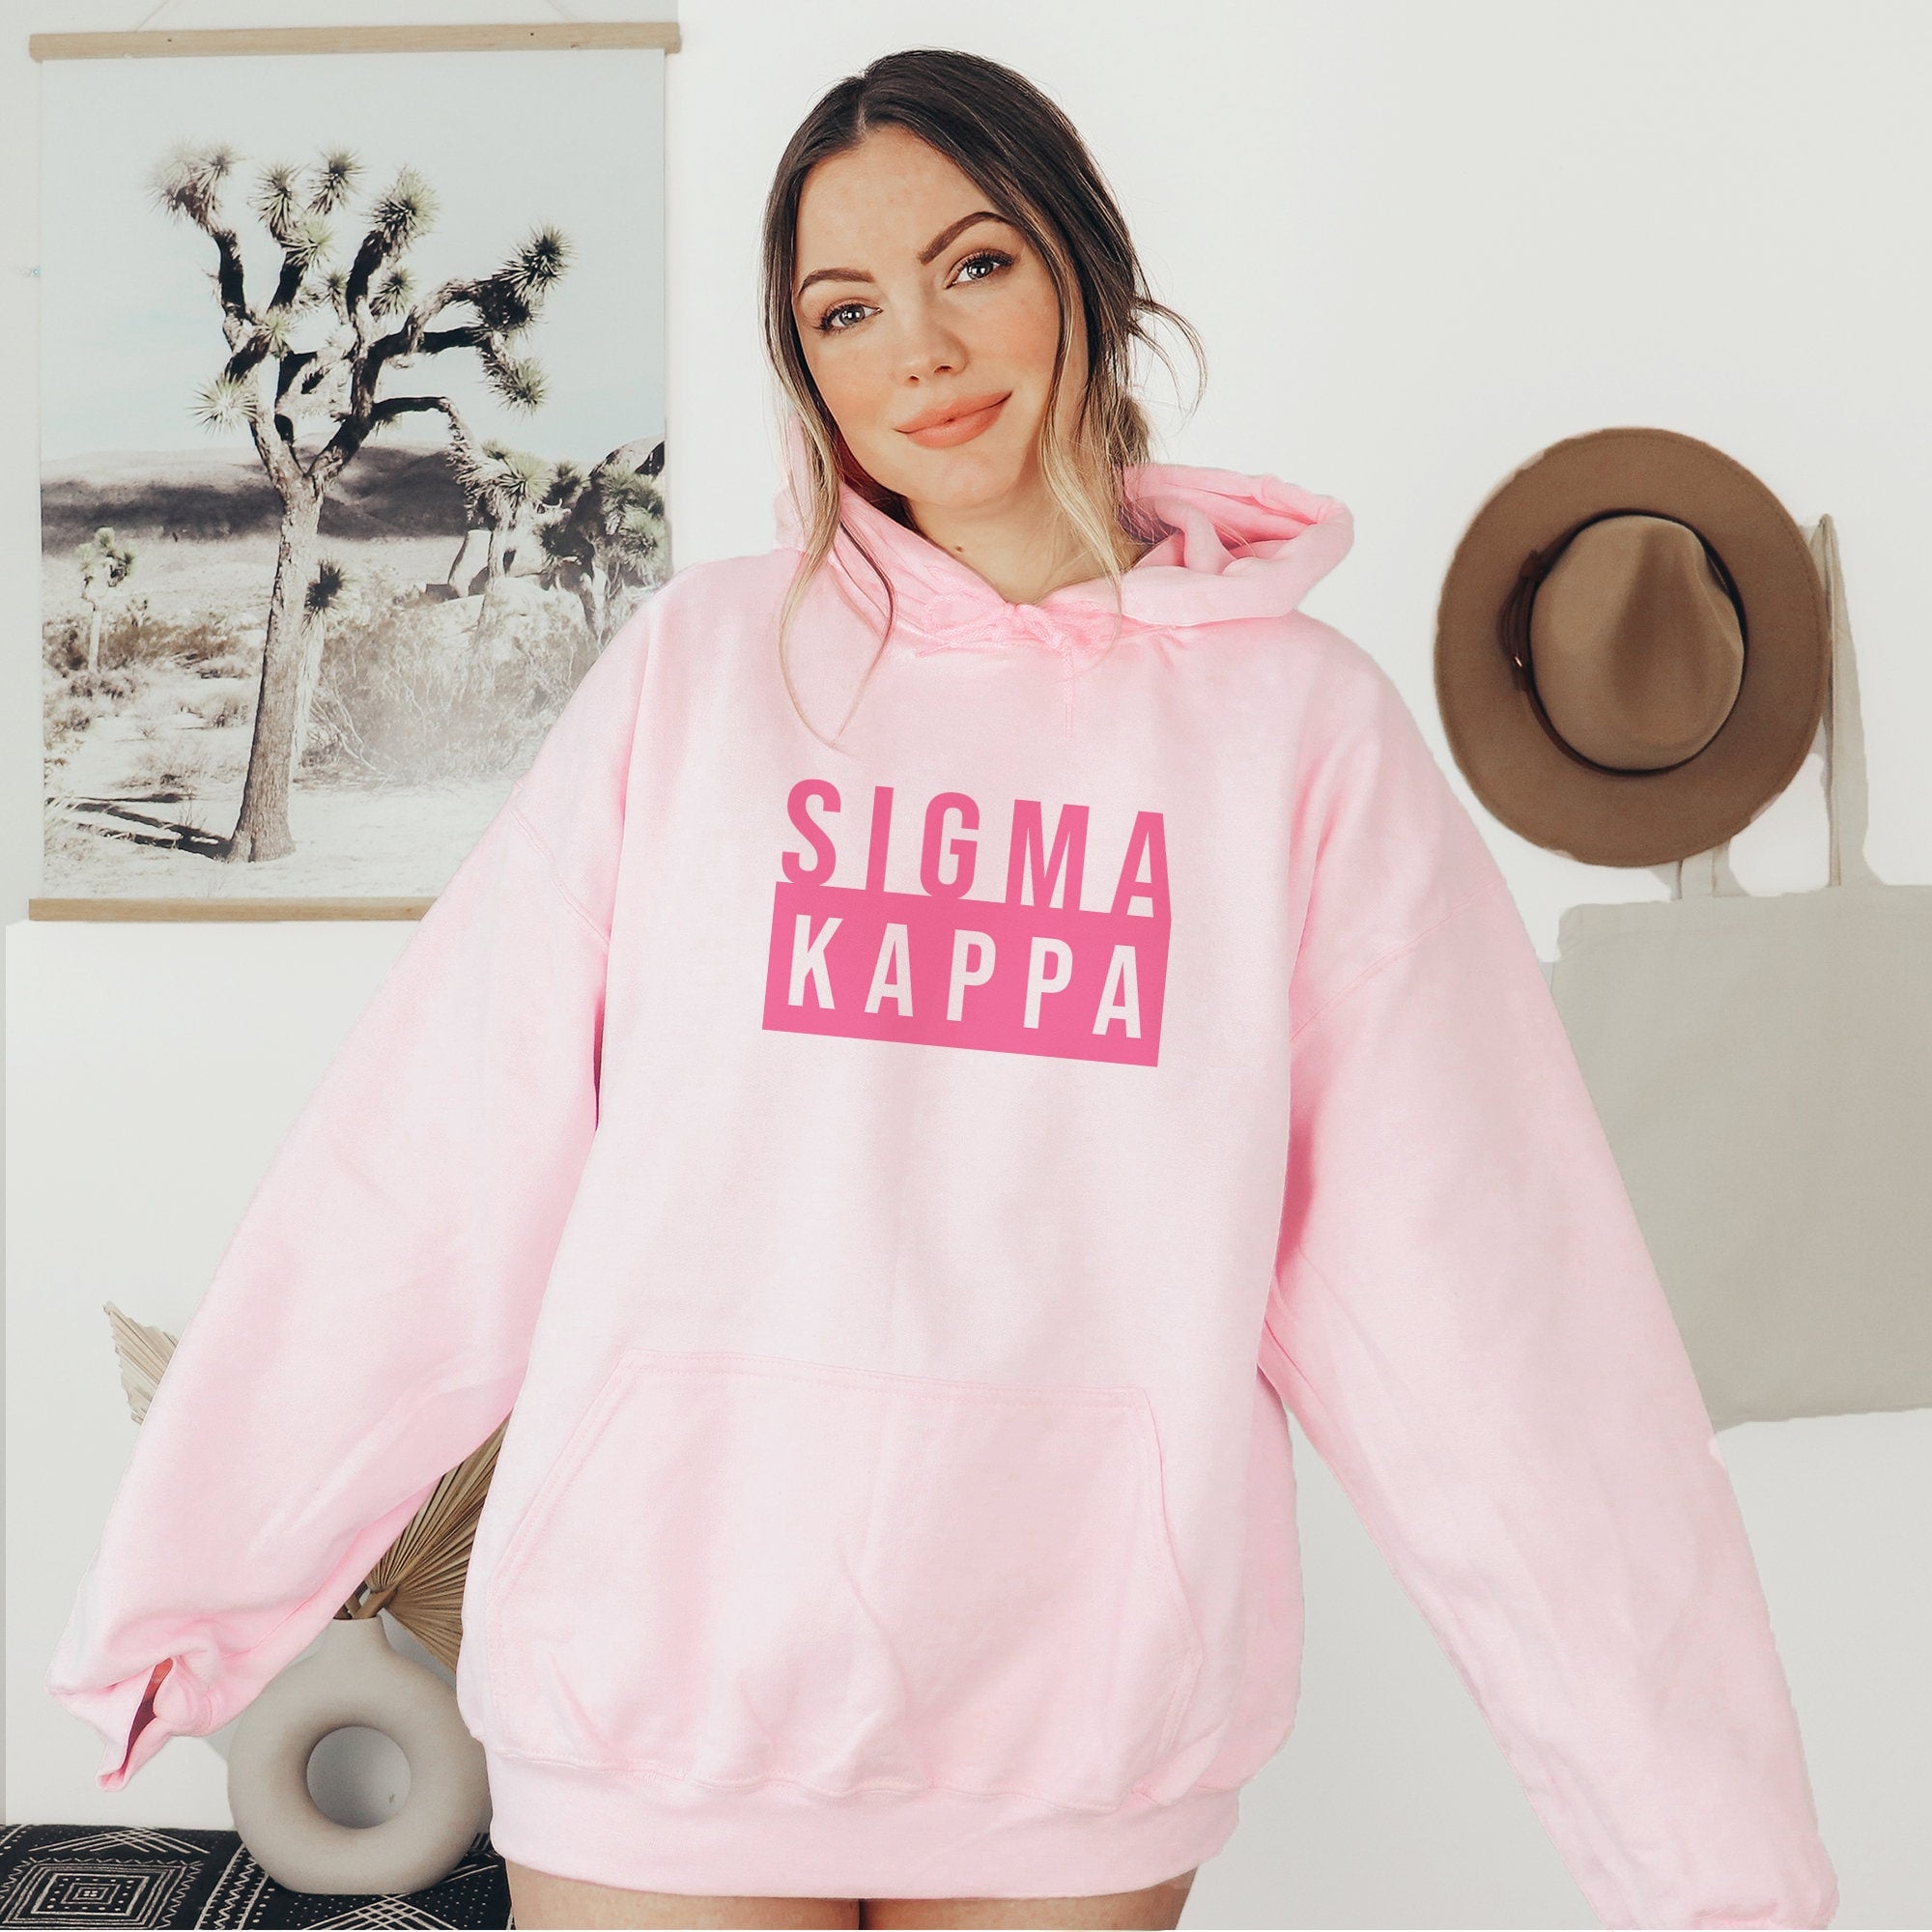 Sigma Kappa Marquee Hoodie - Pink Hoodie - Go Greek Chic